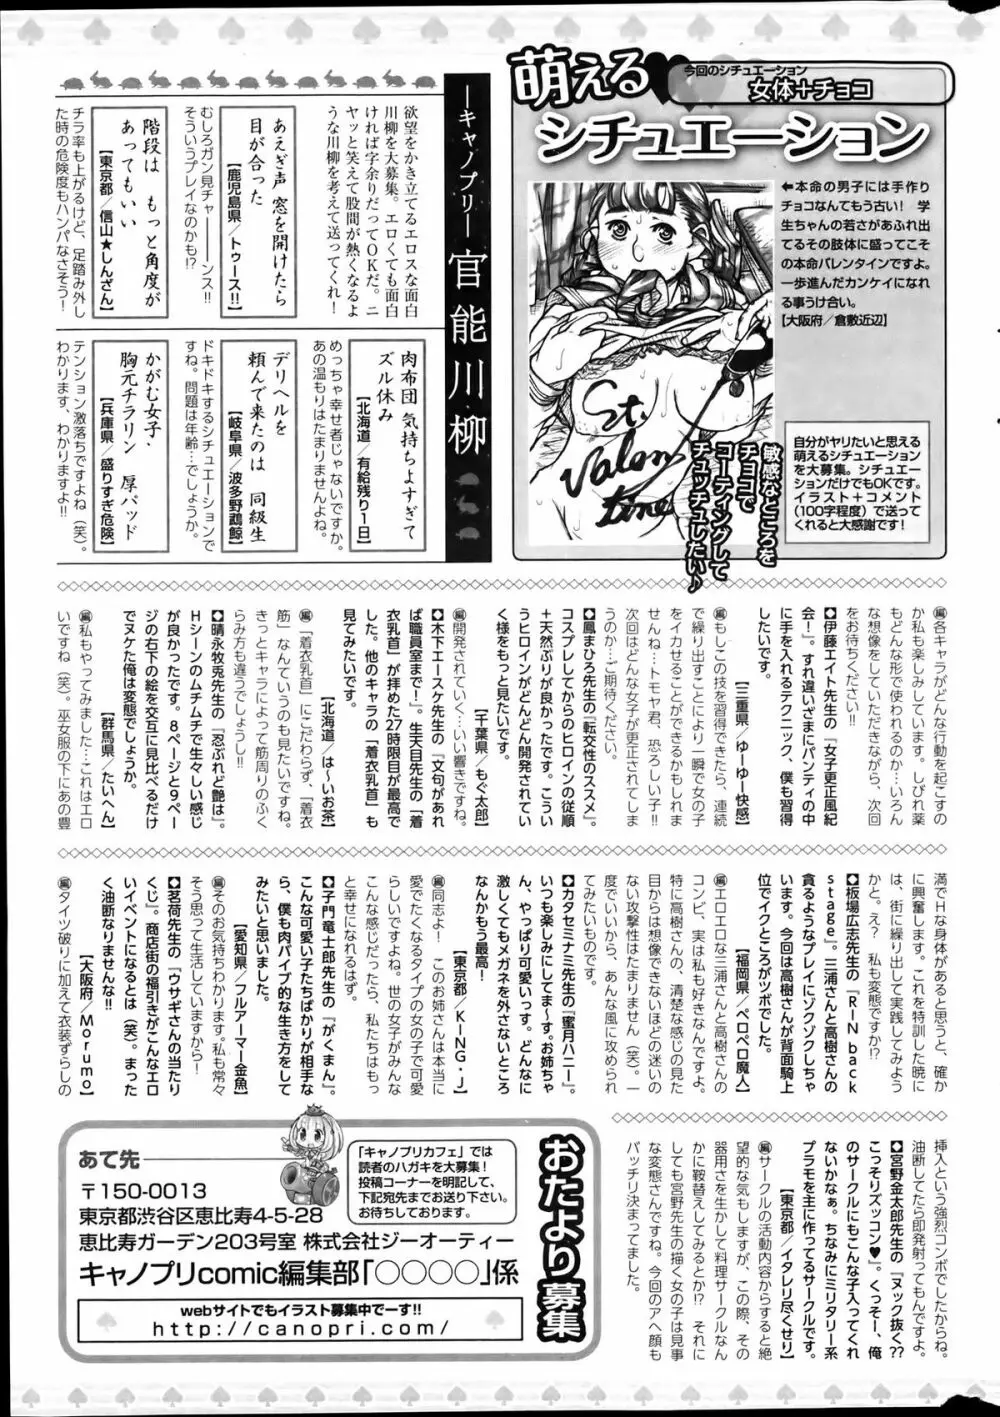 キャノプリcomic 2012年4月号 Vol.18 269ページ